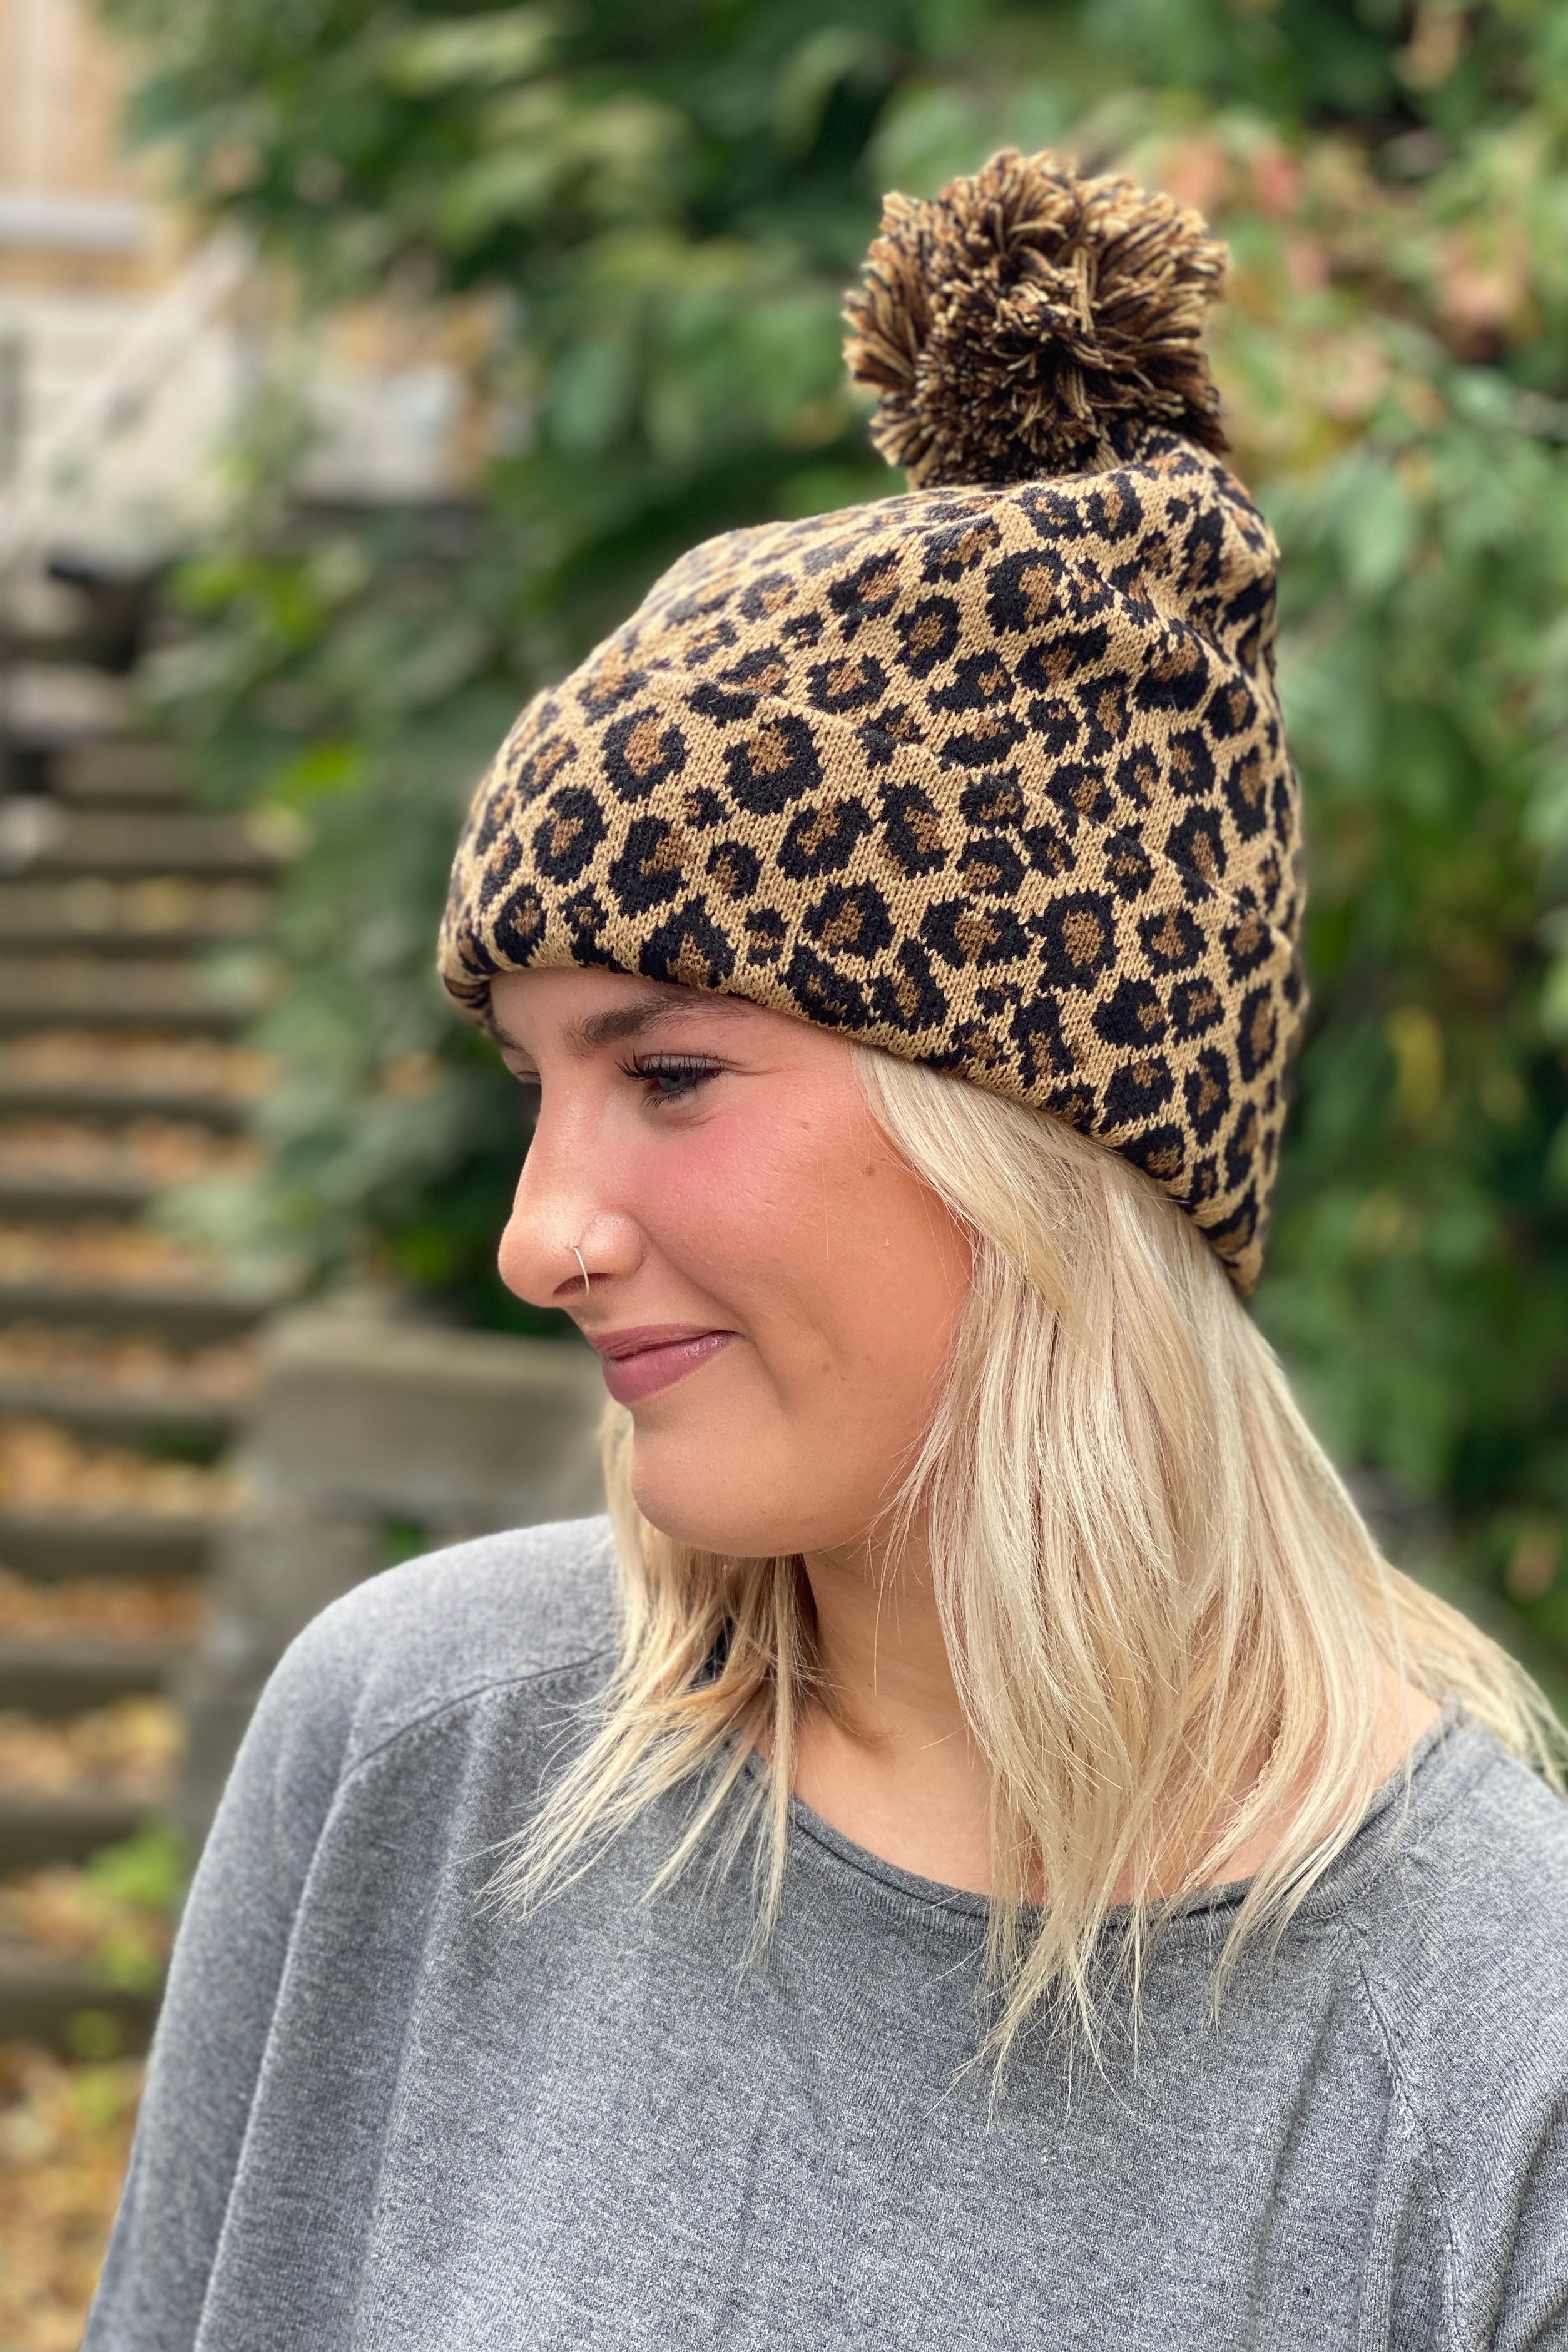 Leopard-Print Pom-Pom Knit Hat